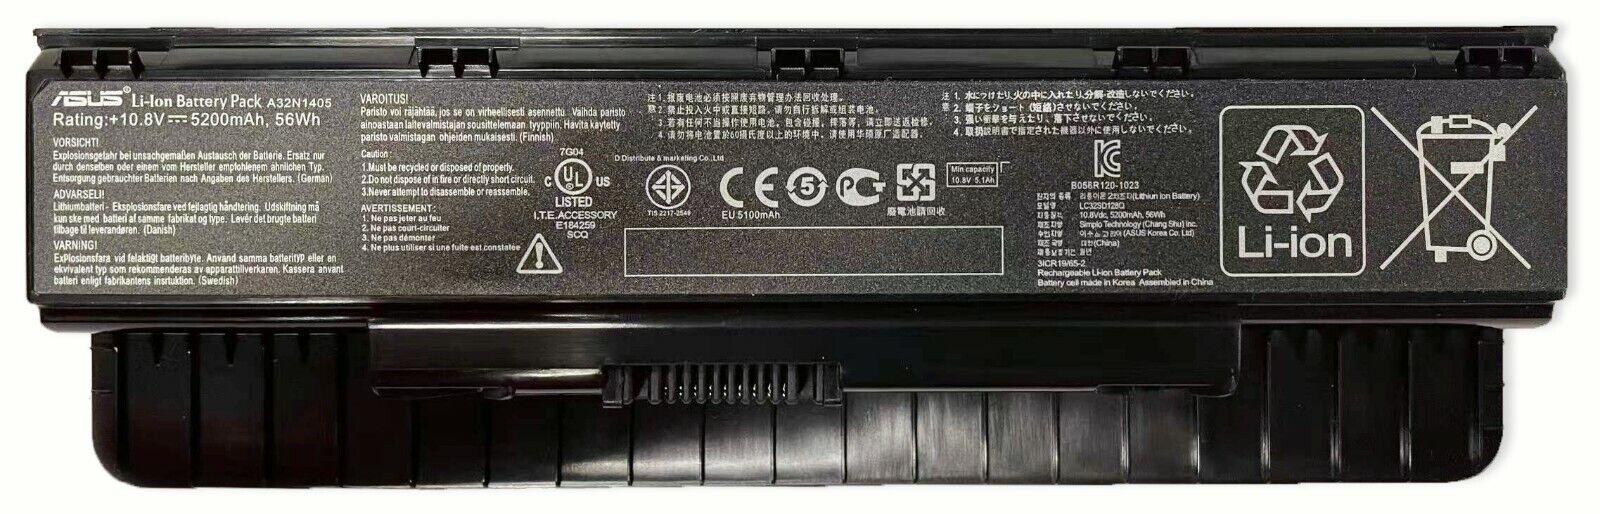 Genuine A32N1405 56Wh Battery for Asus G551 G551J G551JK G551JM G58JM G771 G771J